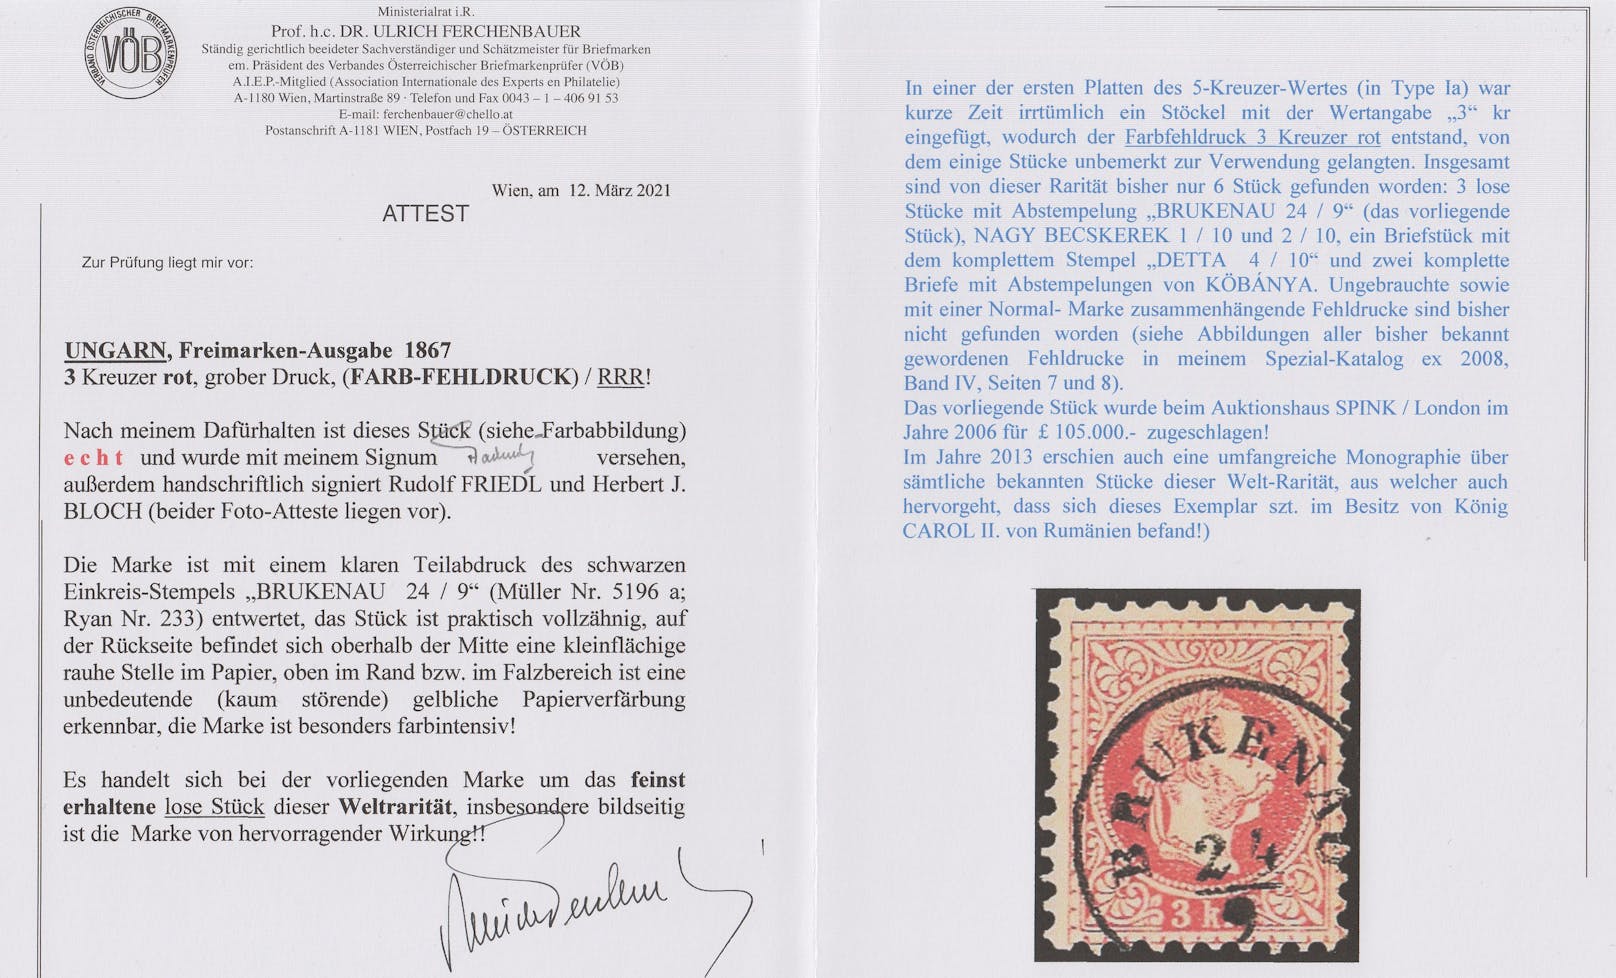 Attest des Briefmarkenprüfers Dr. Ulrich Ferchenbauer für die vorliegende 3-Kreuzer-Marke in Farbfehldruck Rot anstatt Grün.